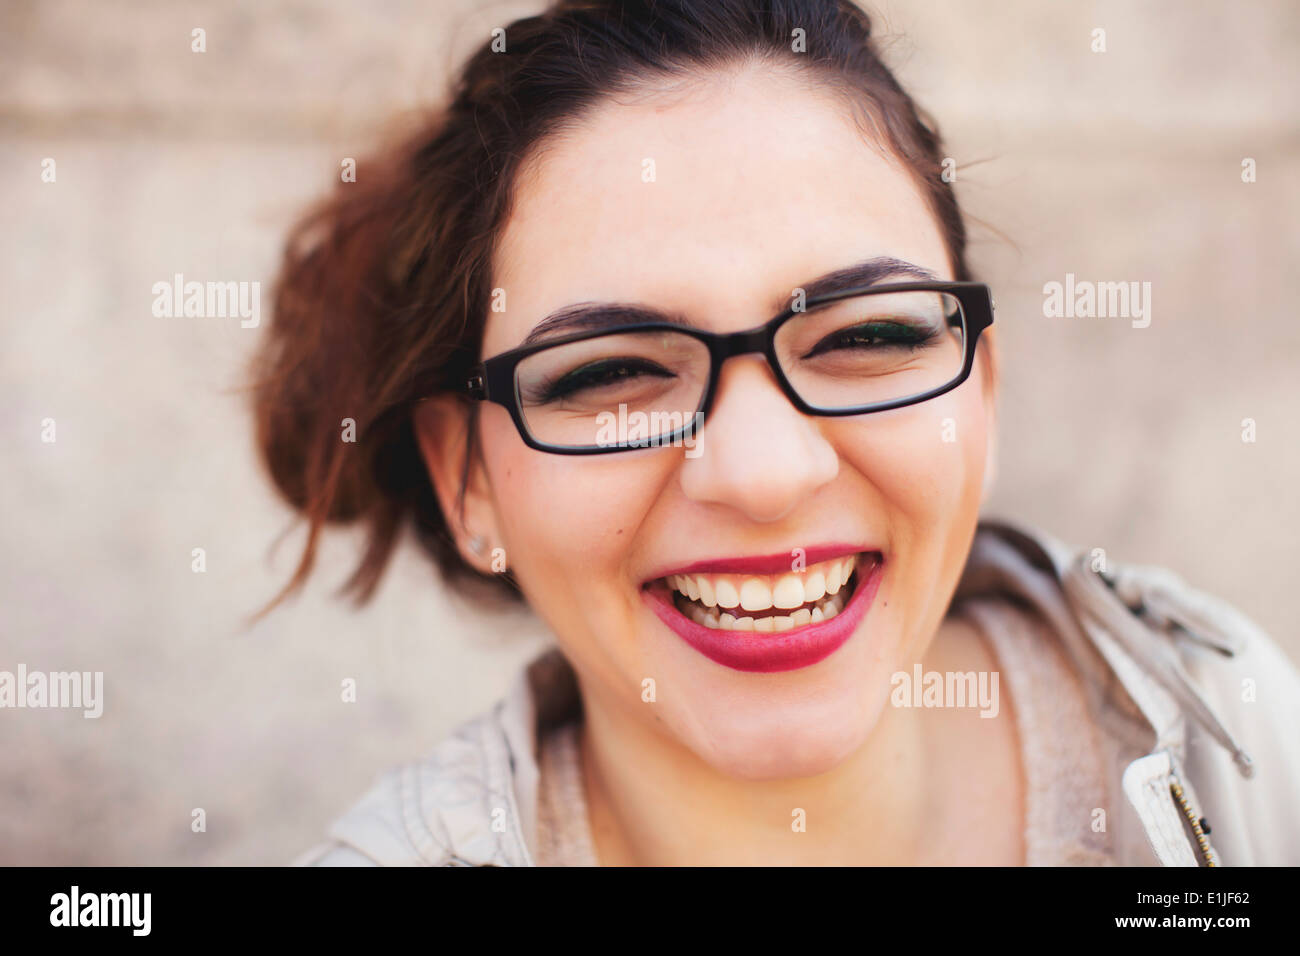 Close Up retrato de mujer joven con gran sonrisa Foto de stock